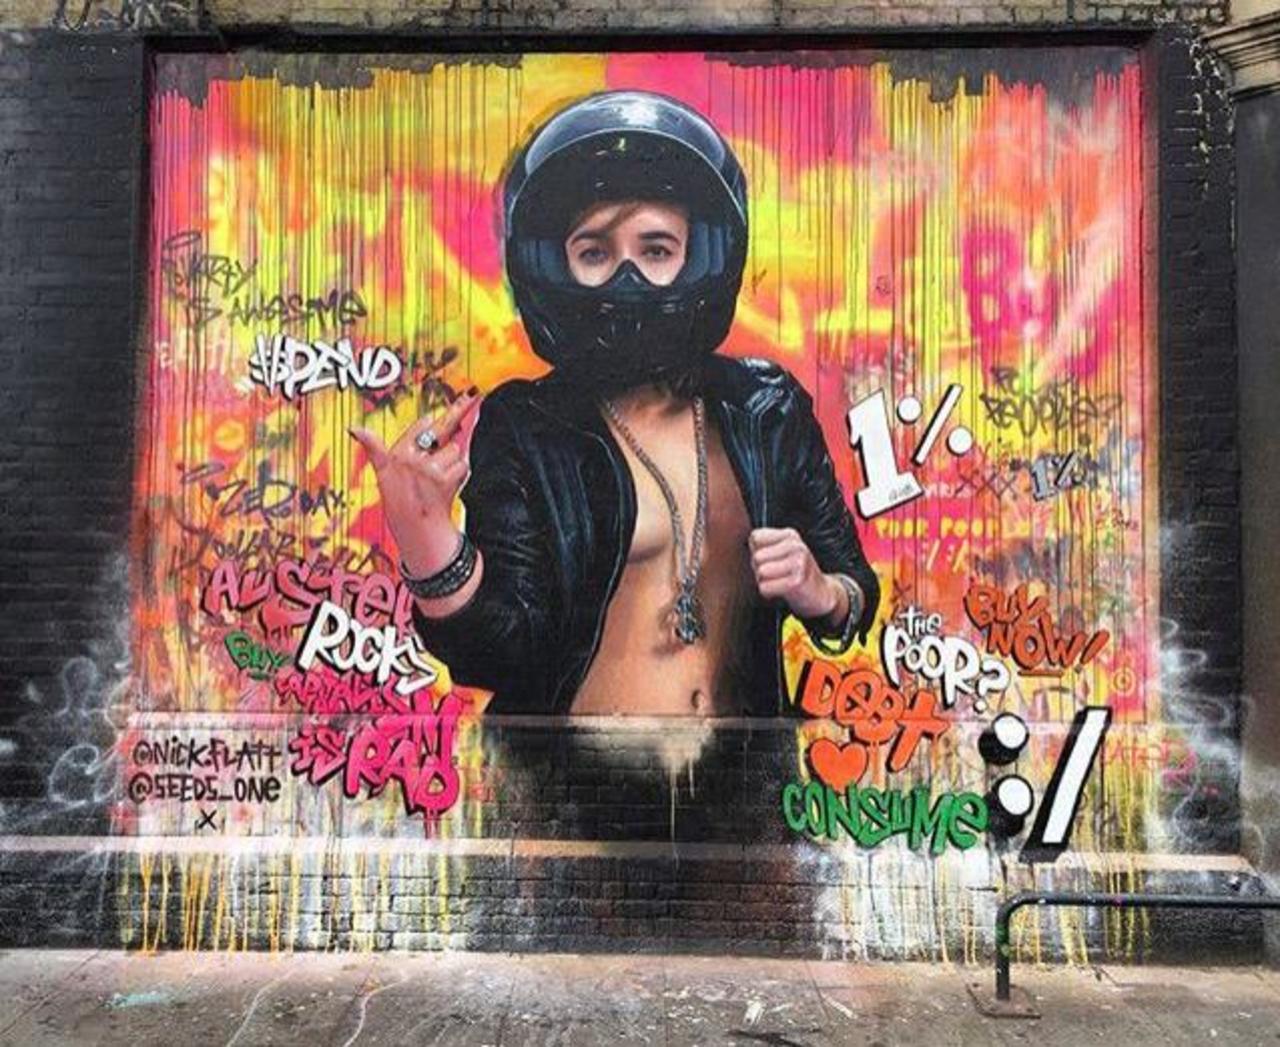 New Street Art collab by Nick Flatt &  Seeds One in London 

#art #graffiti #mural #streetart http://t.co/f4knWrRK5w